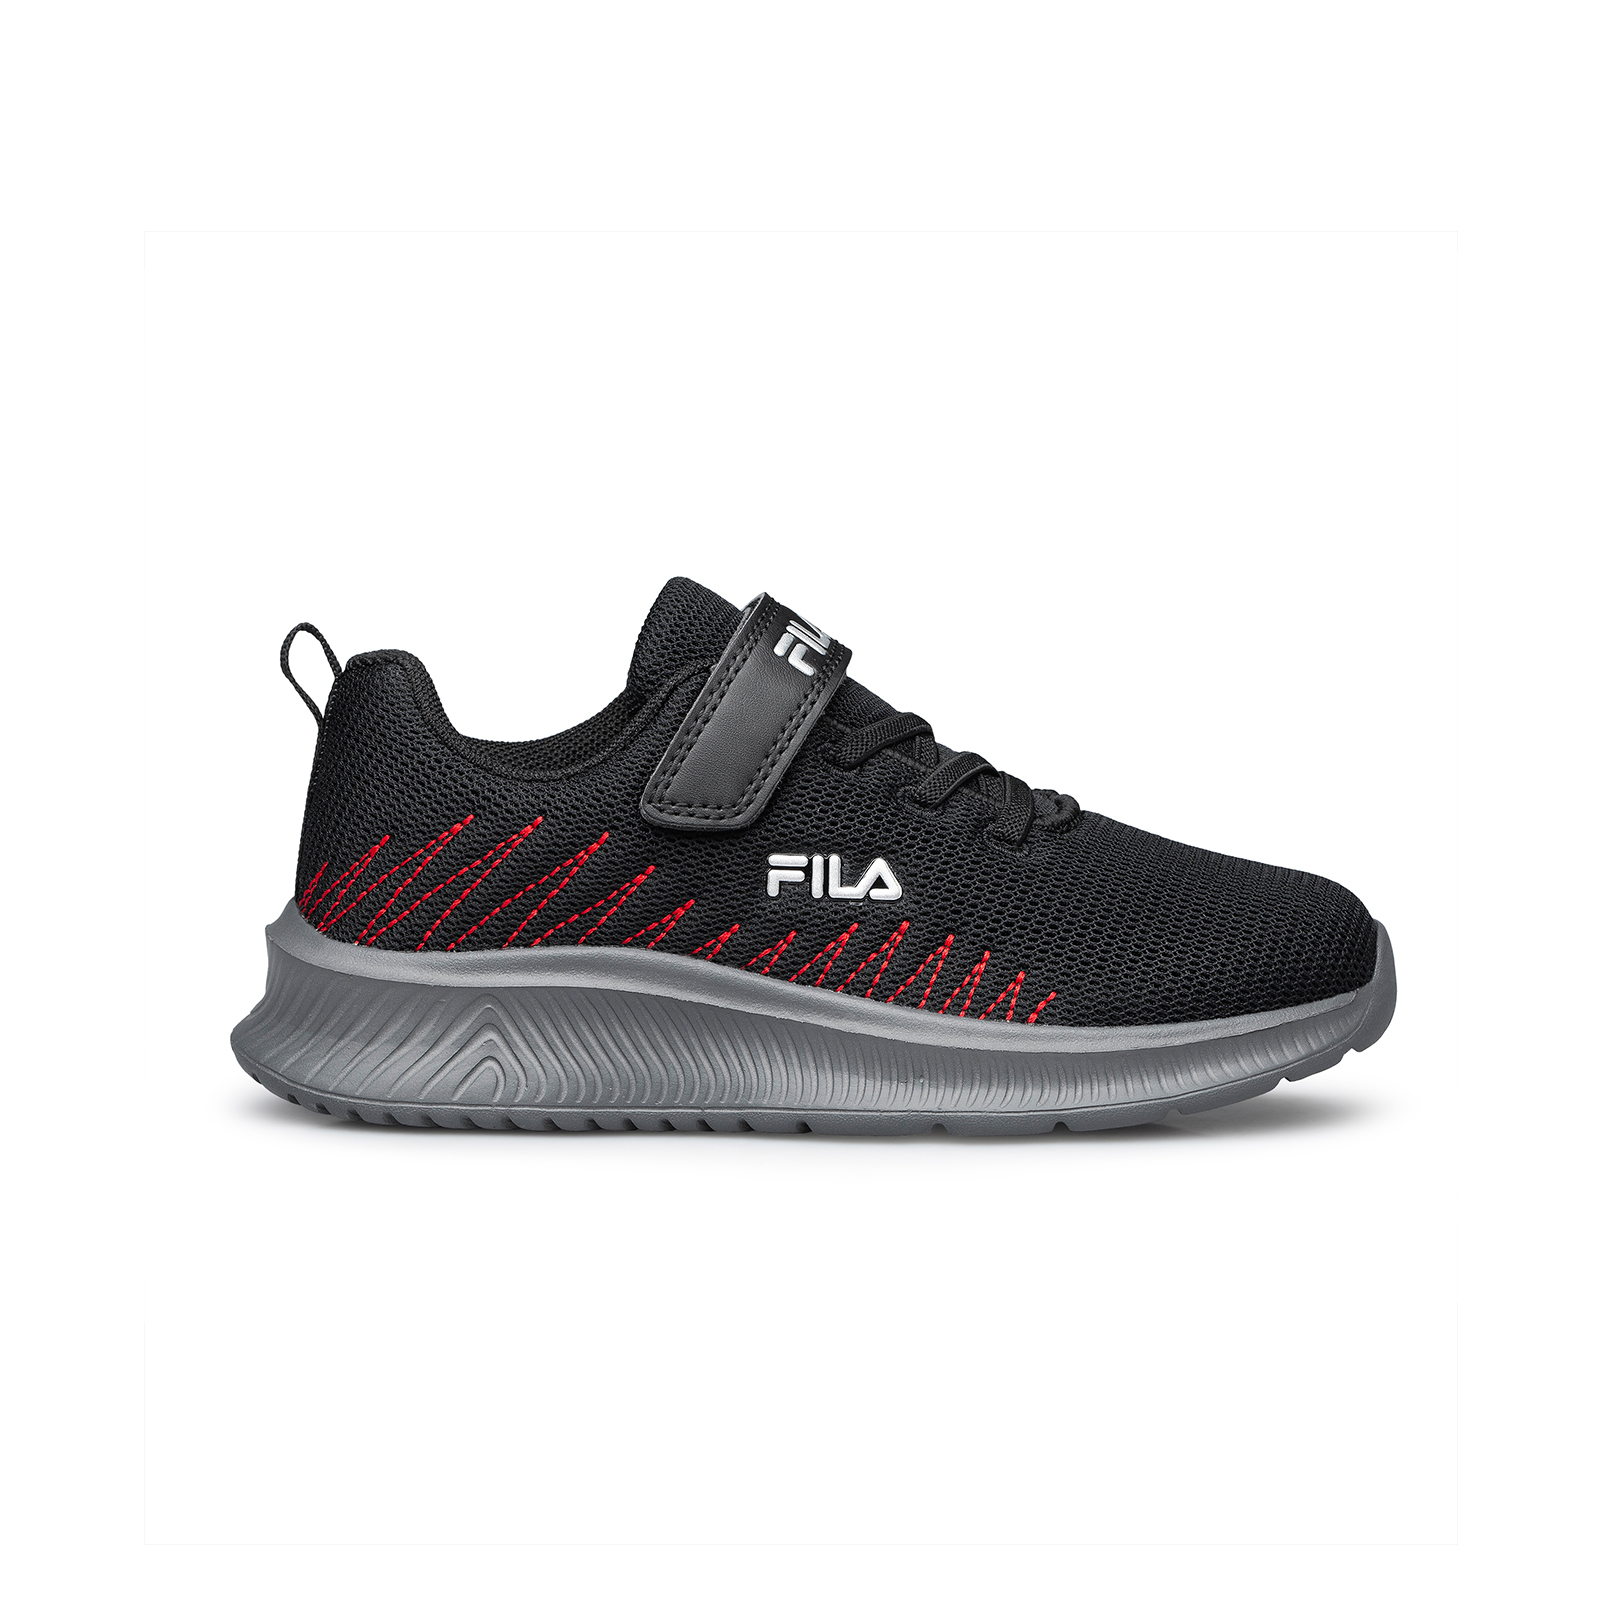 Fila - 1308978 ABEL 2 FOOTWEAR - BLACK Παιδικά > Παπούτσια > Αθλητικά > Παπούτσι Low Cut